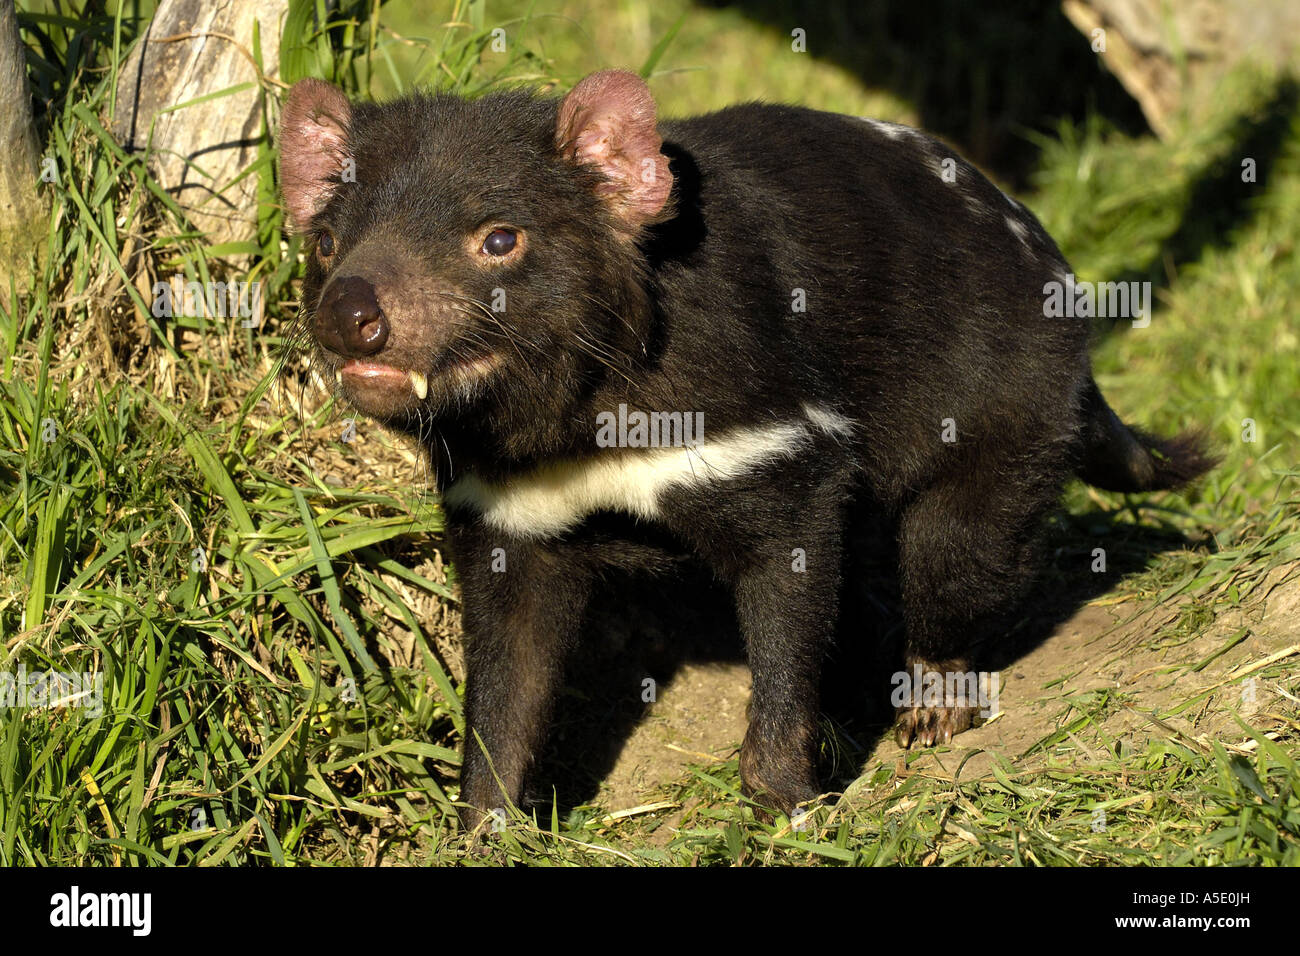 Tasmanian devil (Sarcophilus harrisii, Sarcophilus harrisii), portrait, Australia, Tasmania Stock Photo